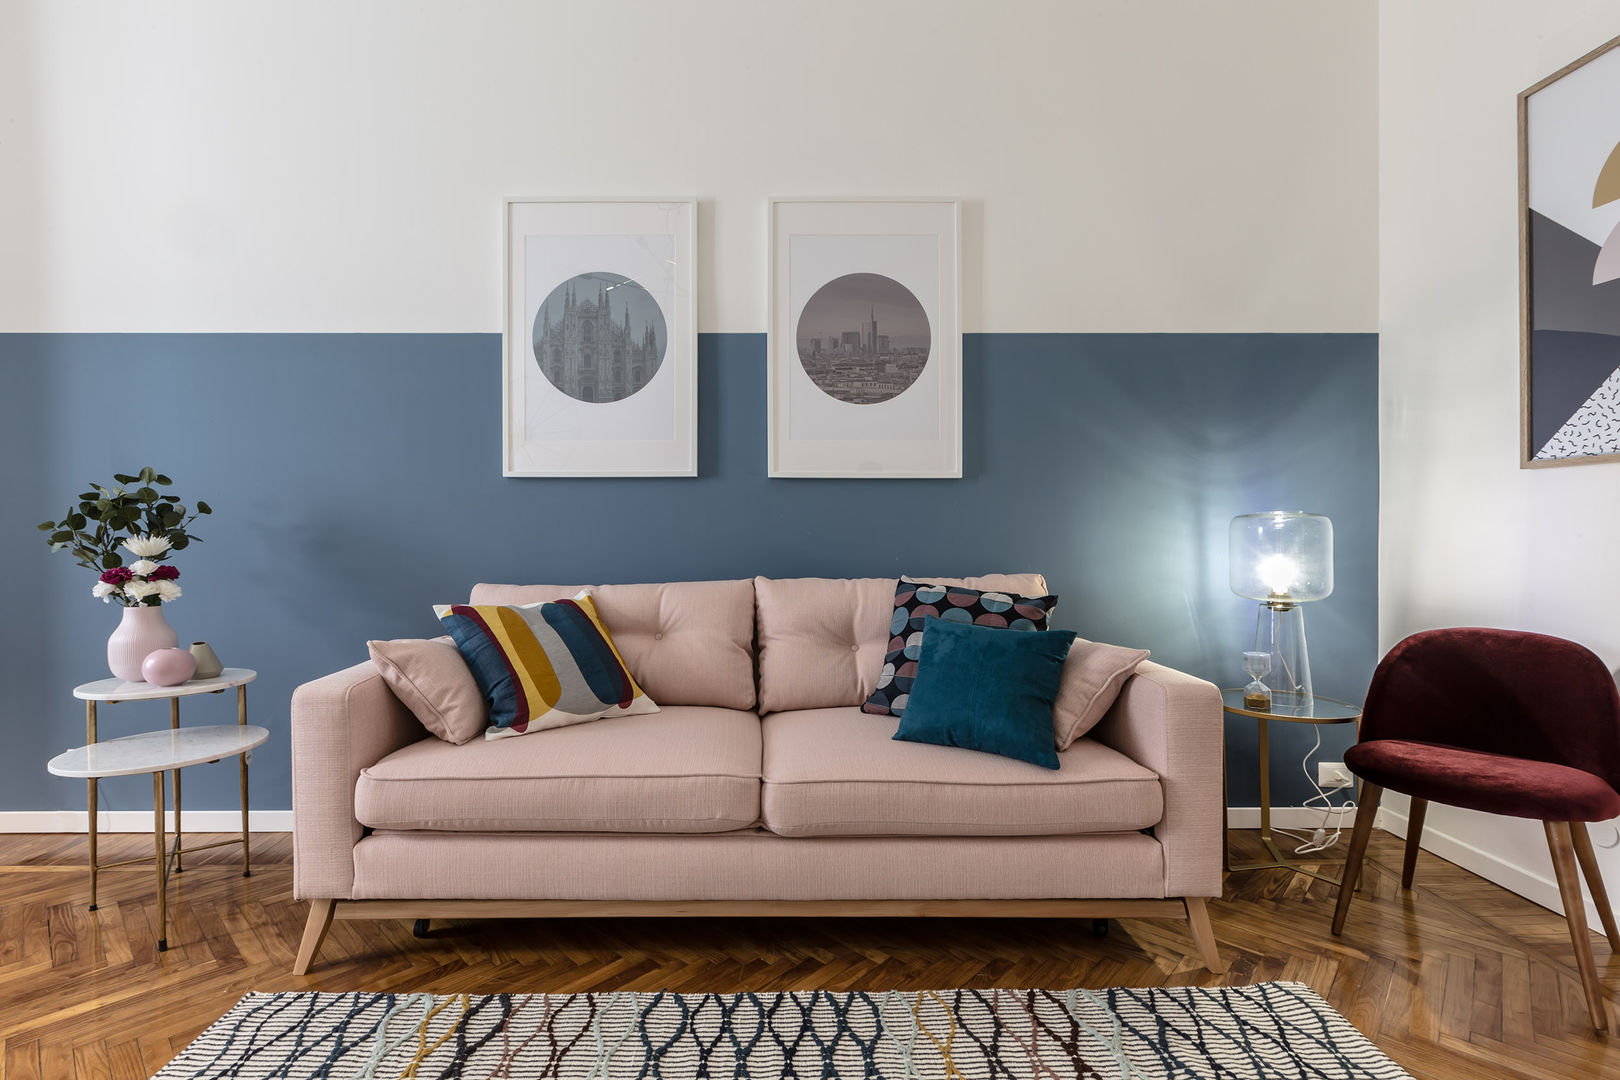 Soggiorno Architrek Soggiorno moderno divano,tappeto,colore delle pareti,blu,quadri,lampada da tavolo